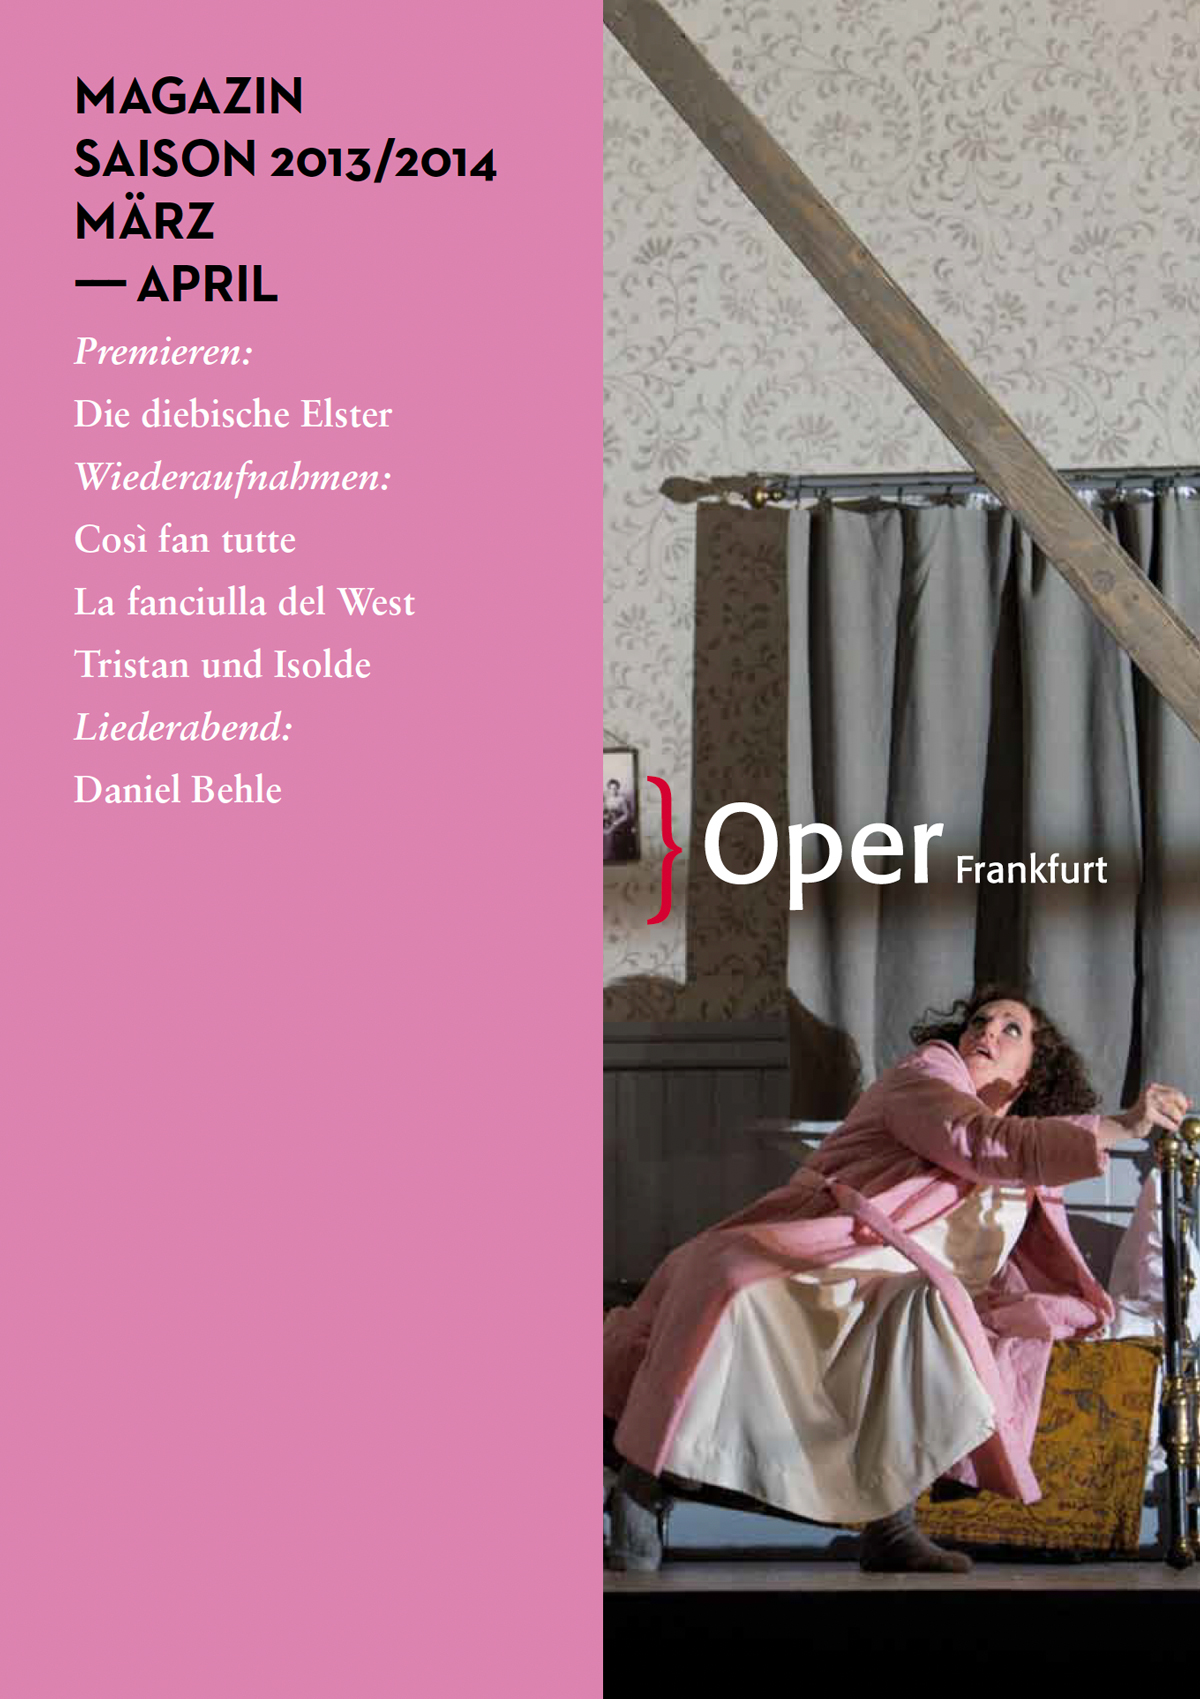 Essay von Joachim Tschiedel "Wenn Augen leuchten" Oper Frankfurt Magazin